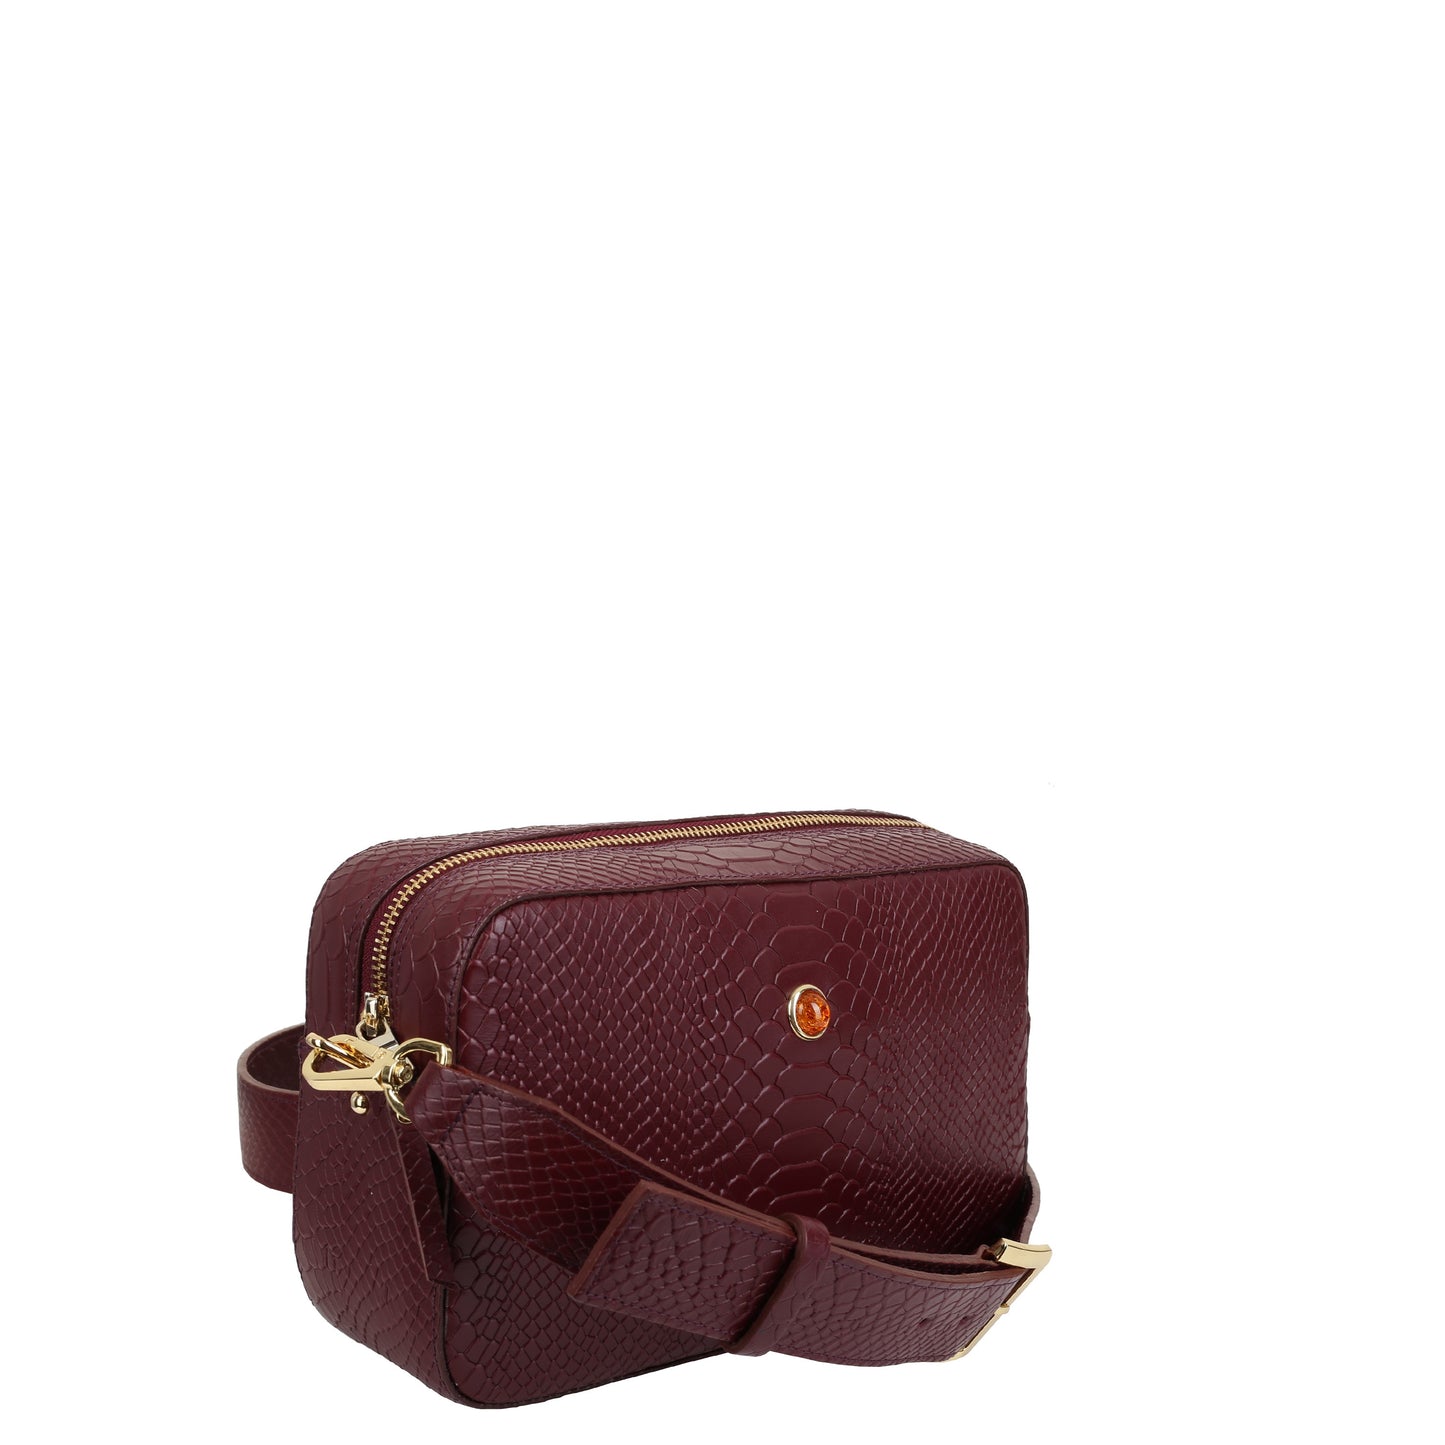 Alfie claret women's leather handbag